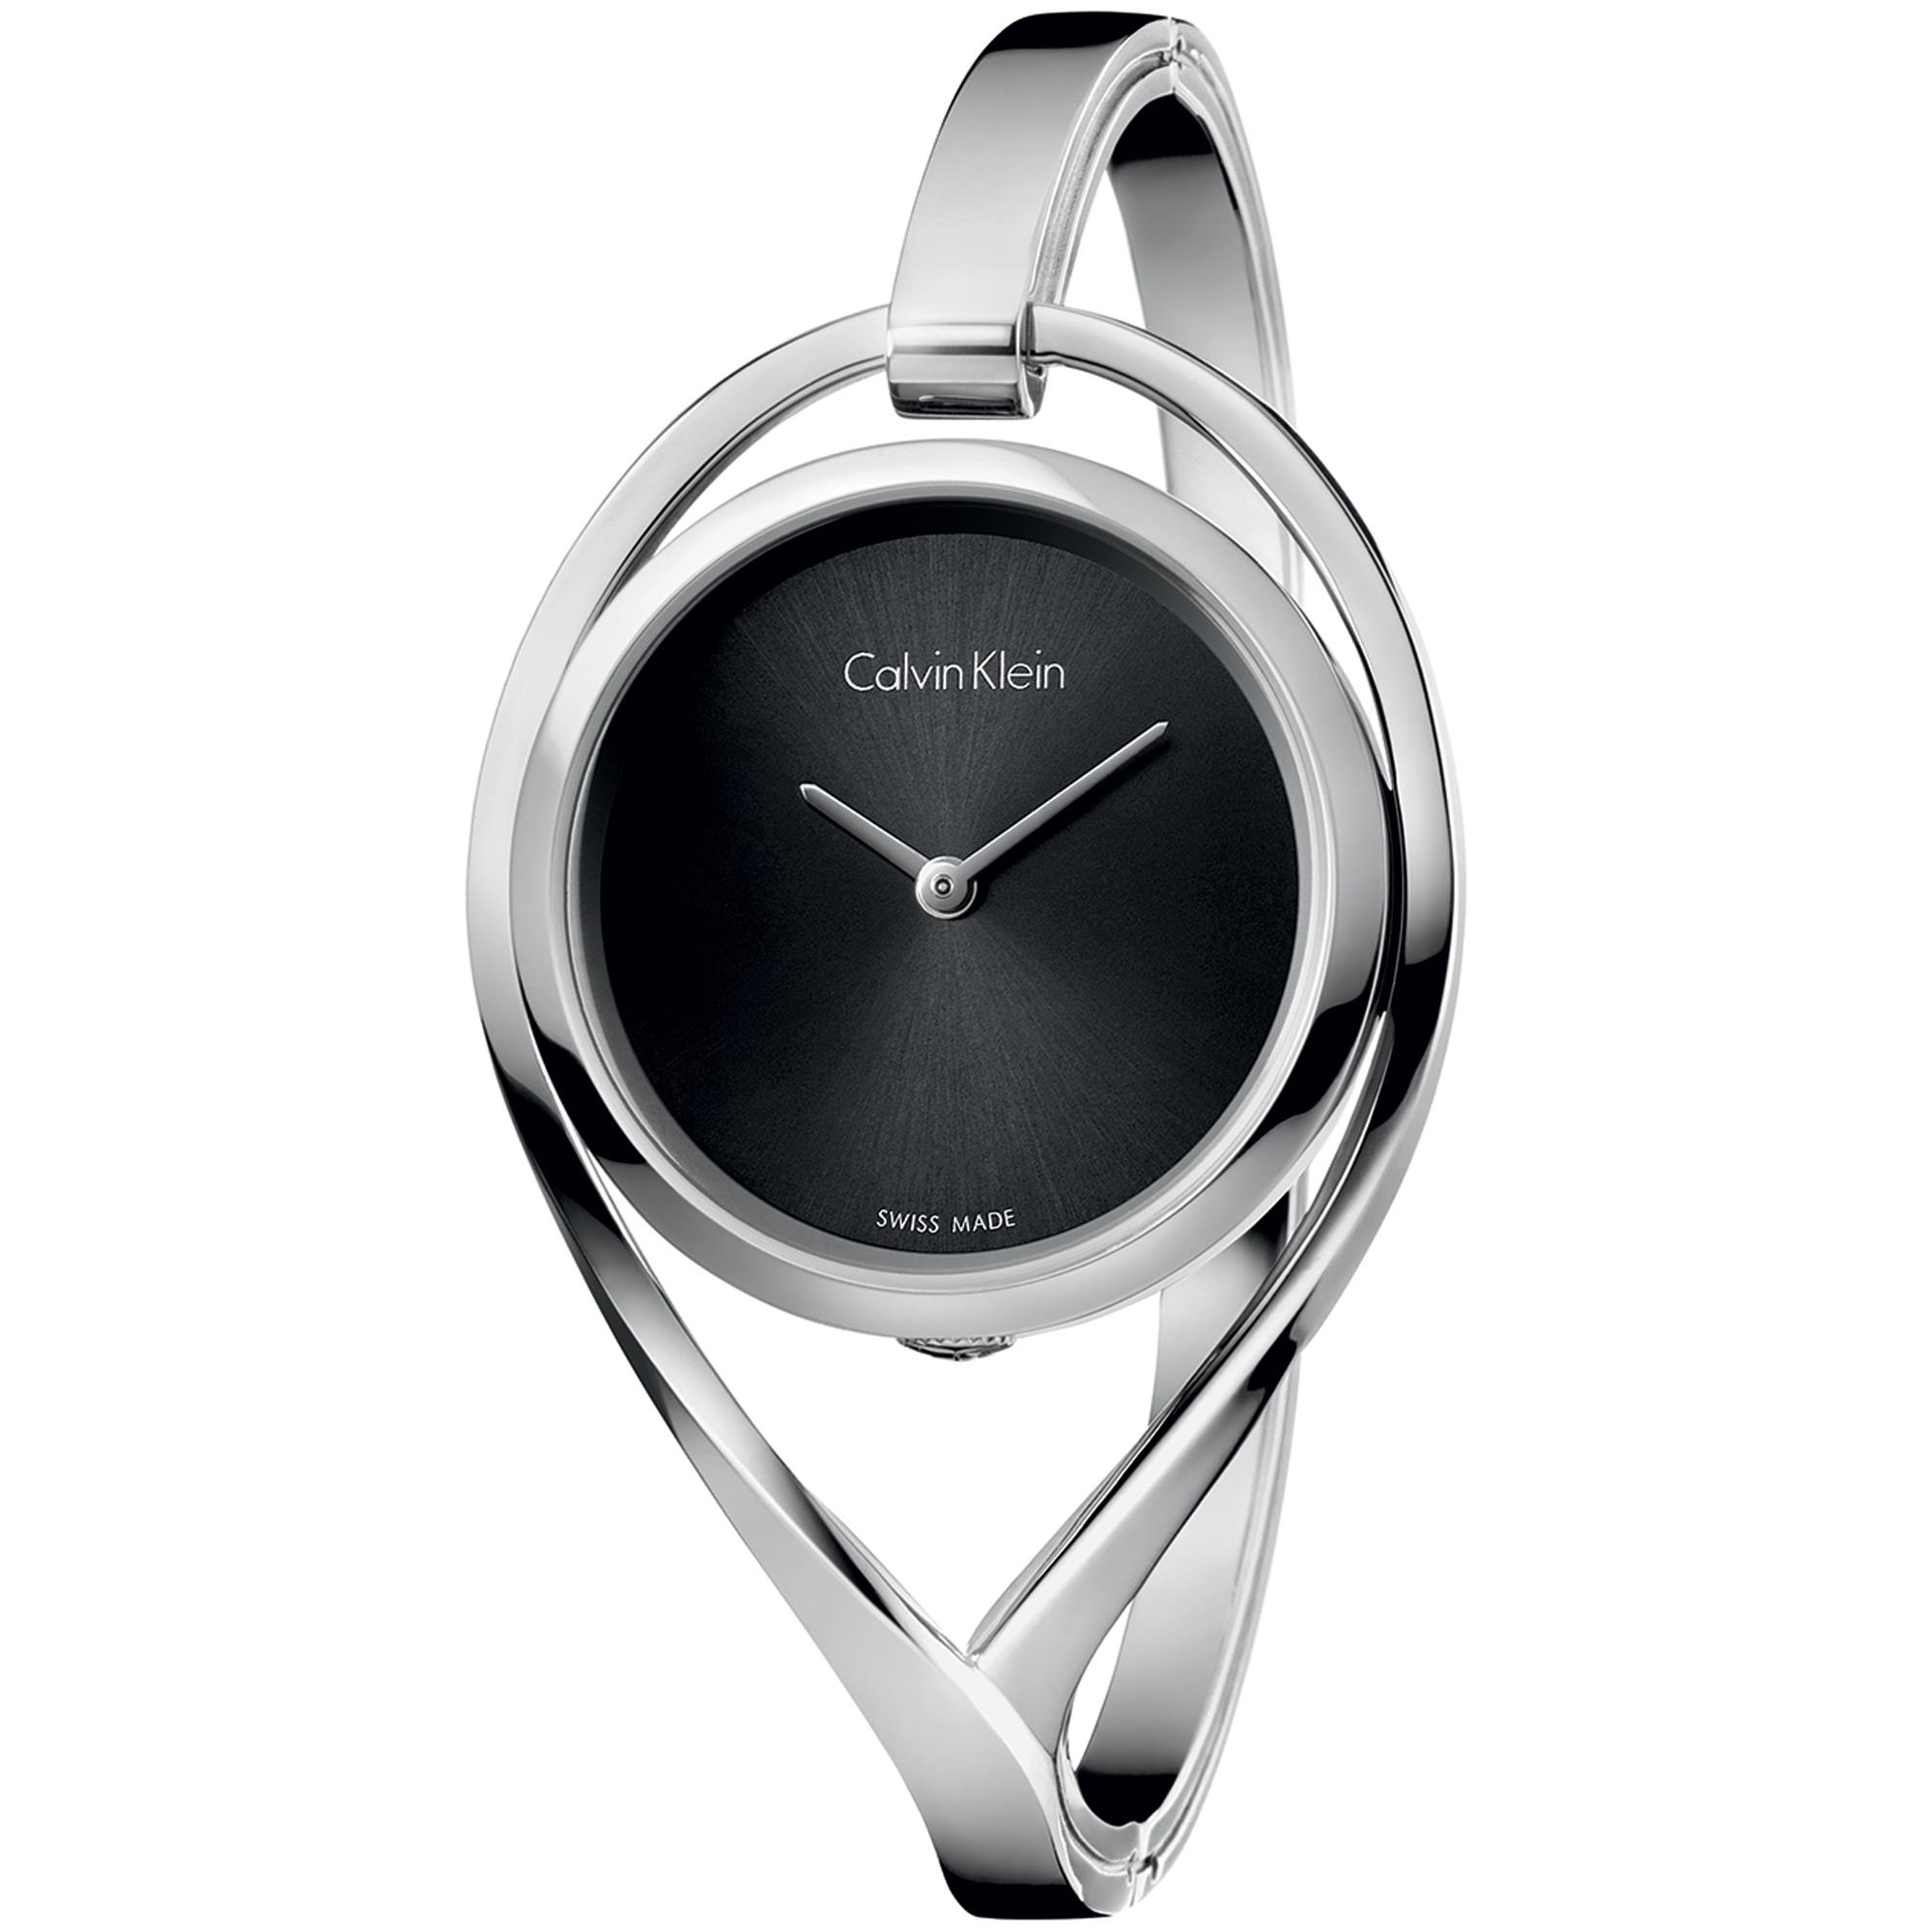 Orologio Calvin Klein Light silver - CALVIN KLEIN